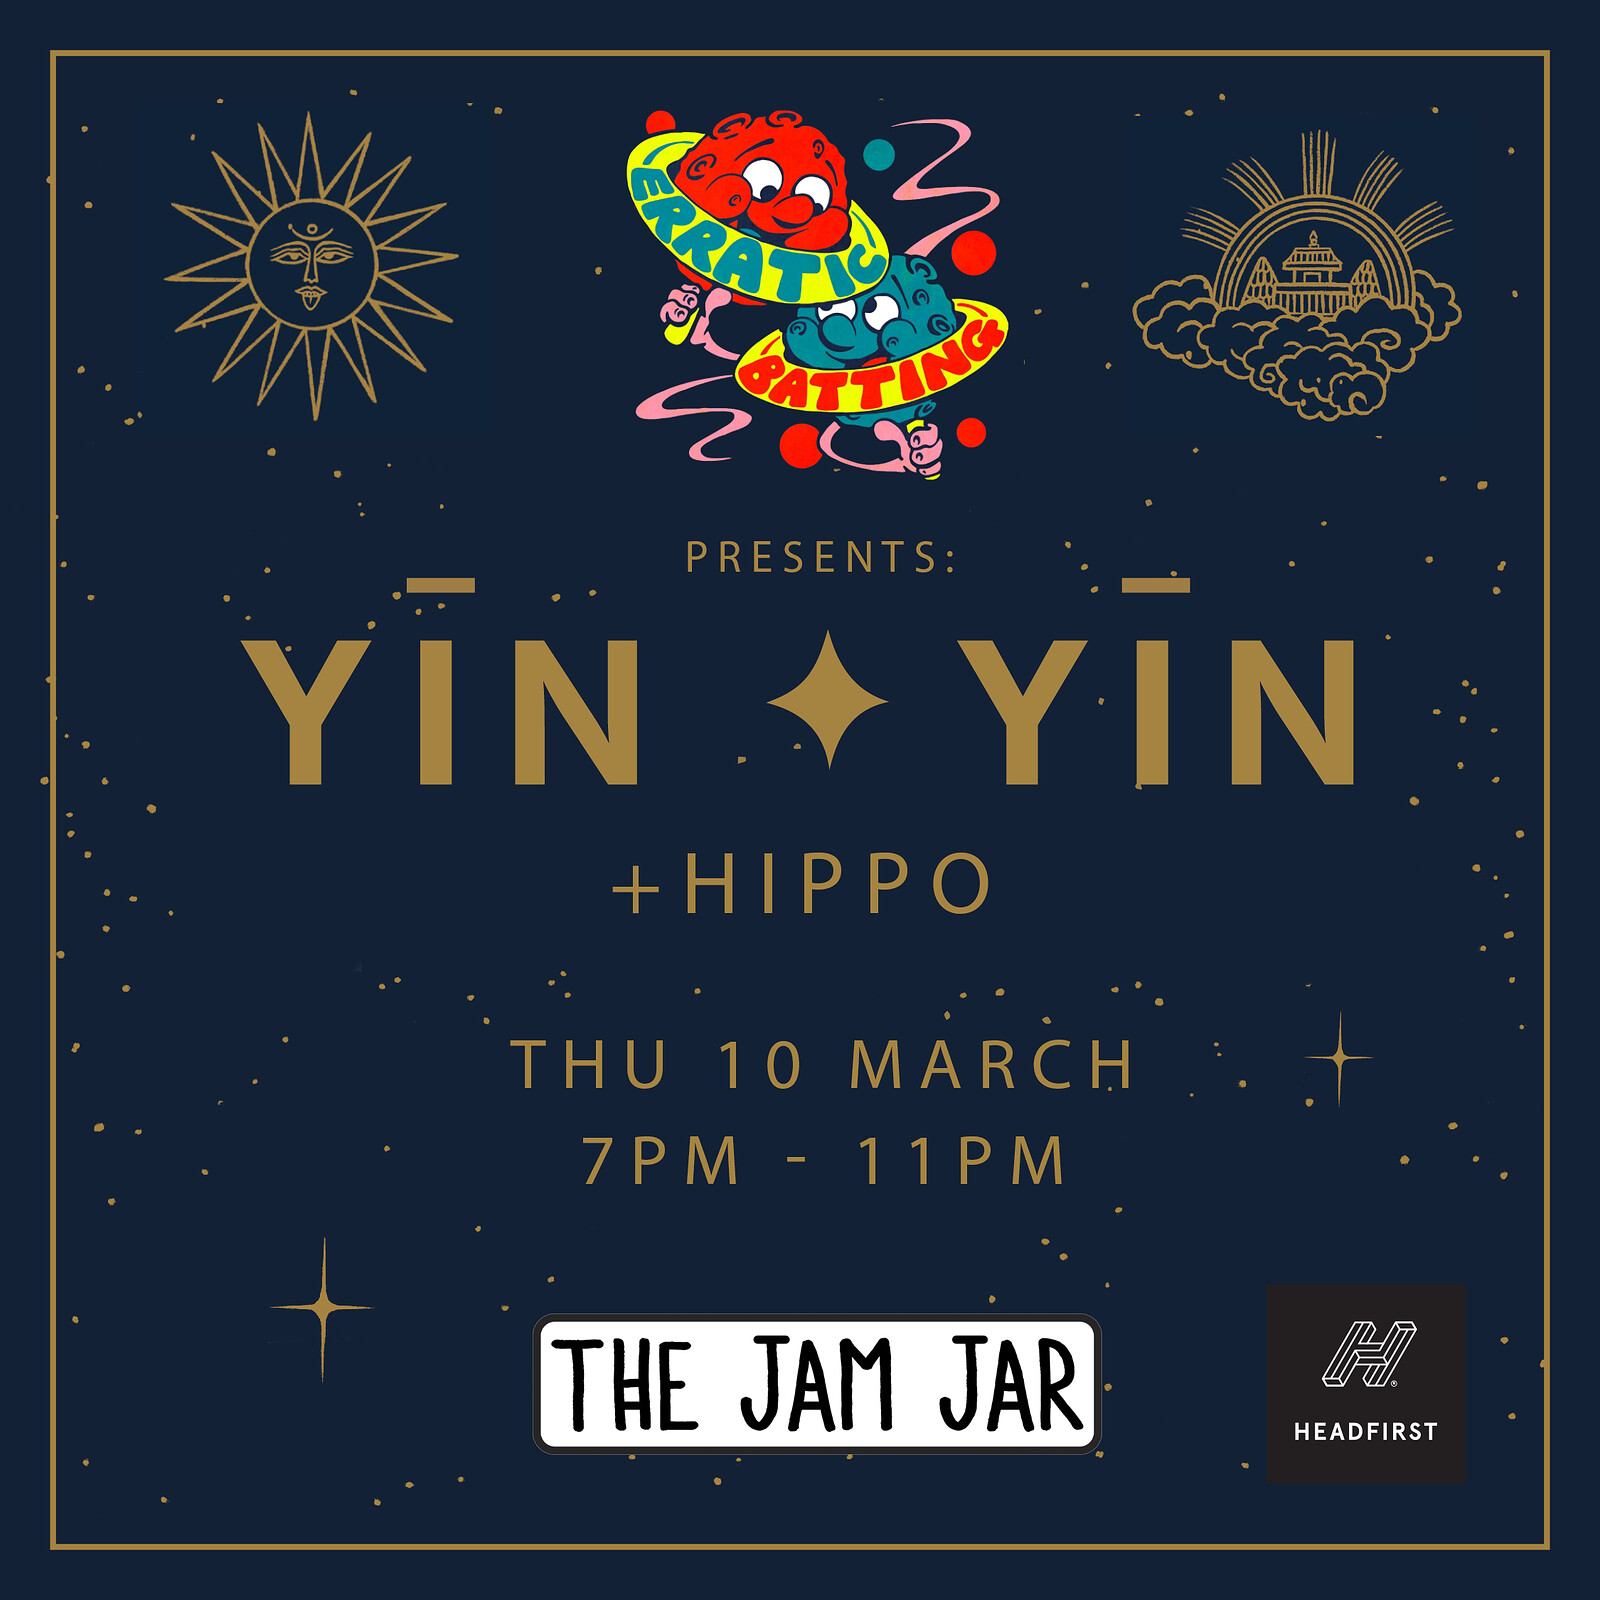 YĪN YĪN + Hippo at The Jam Jar